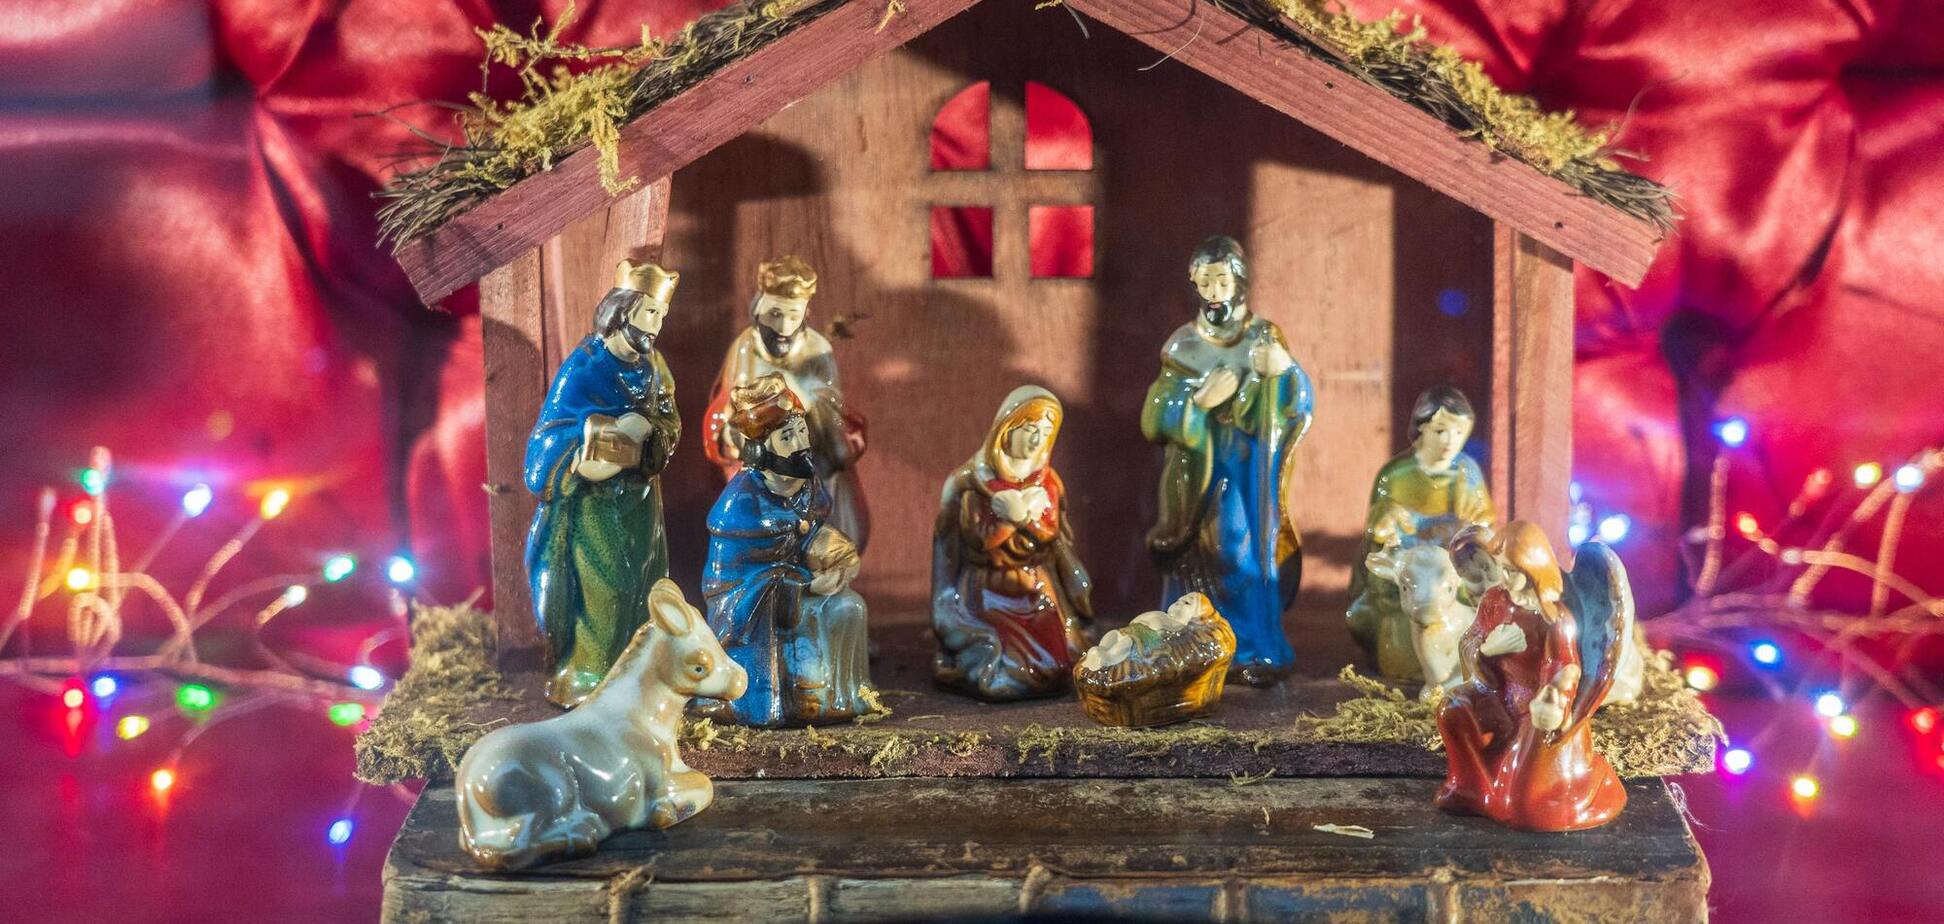 Православные и католики отмечают Рождество по разным календарям